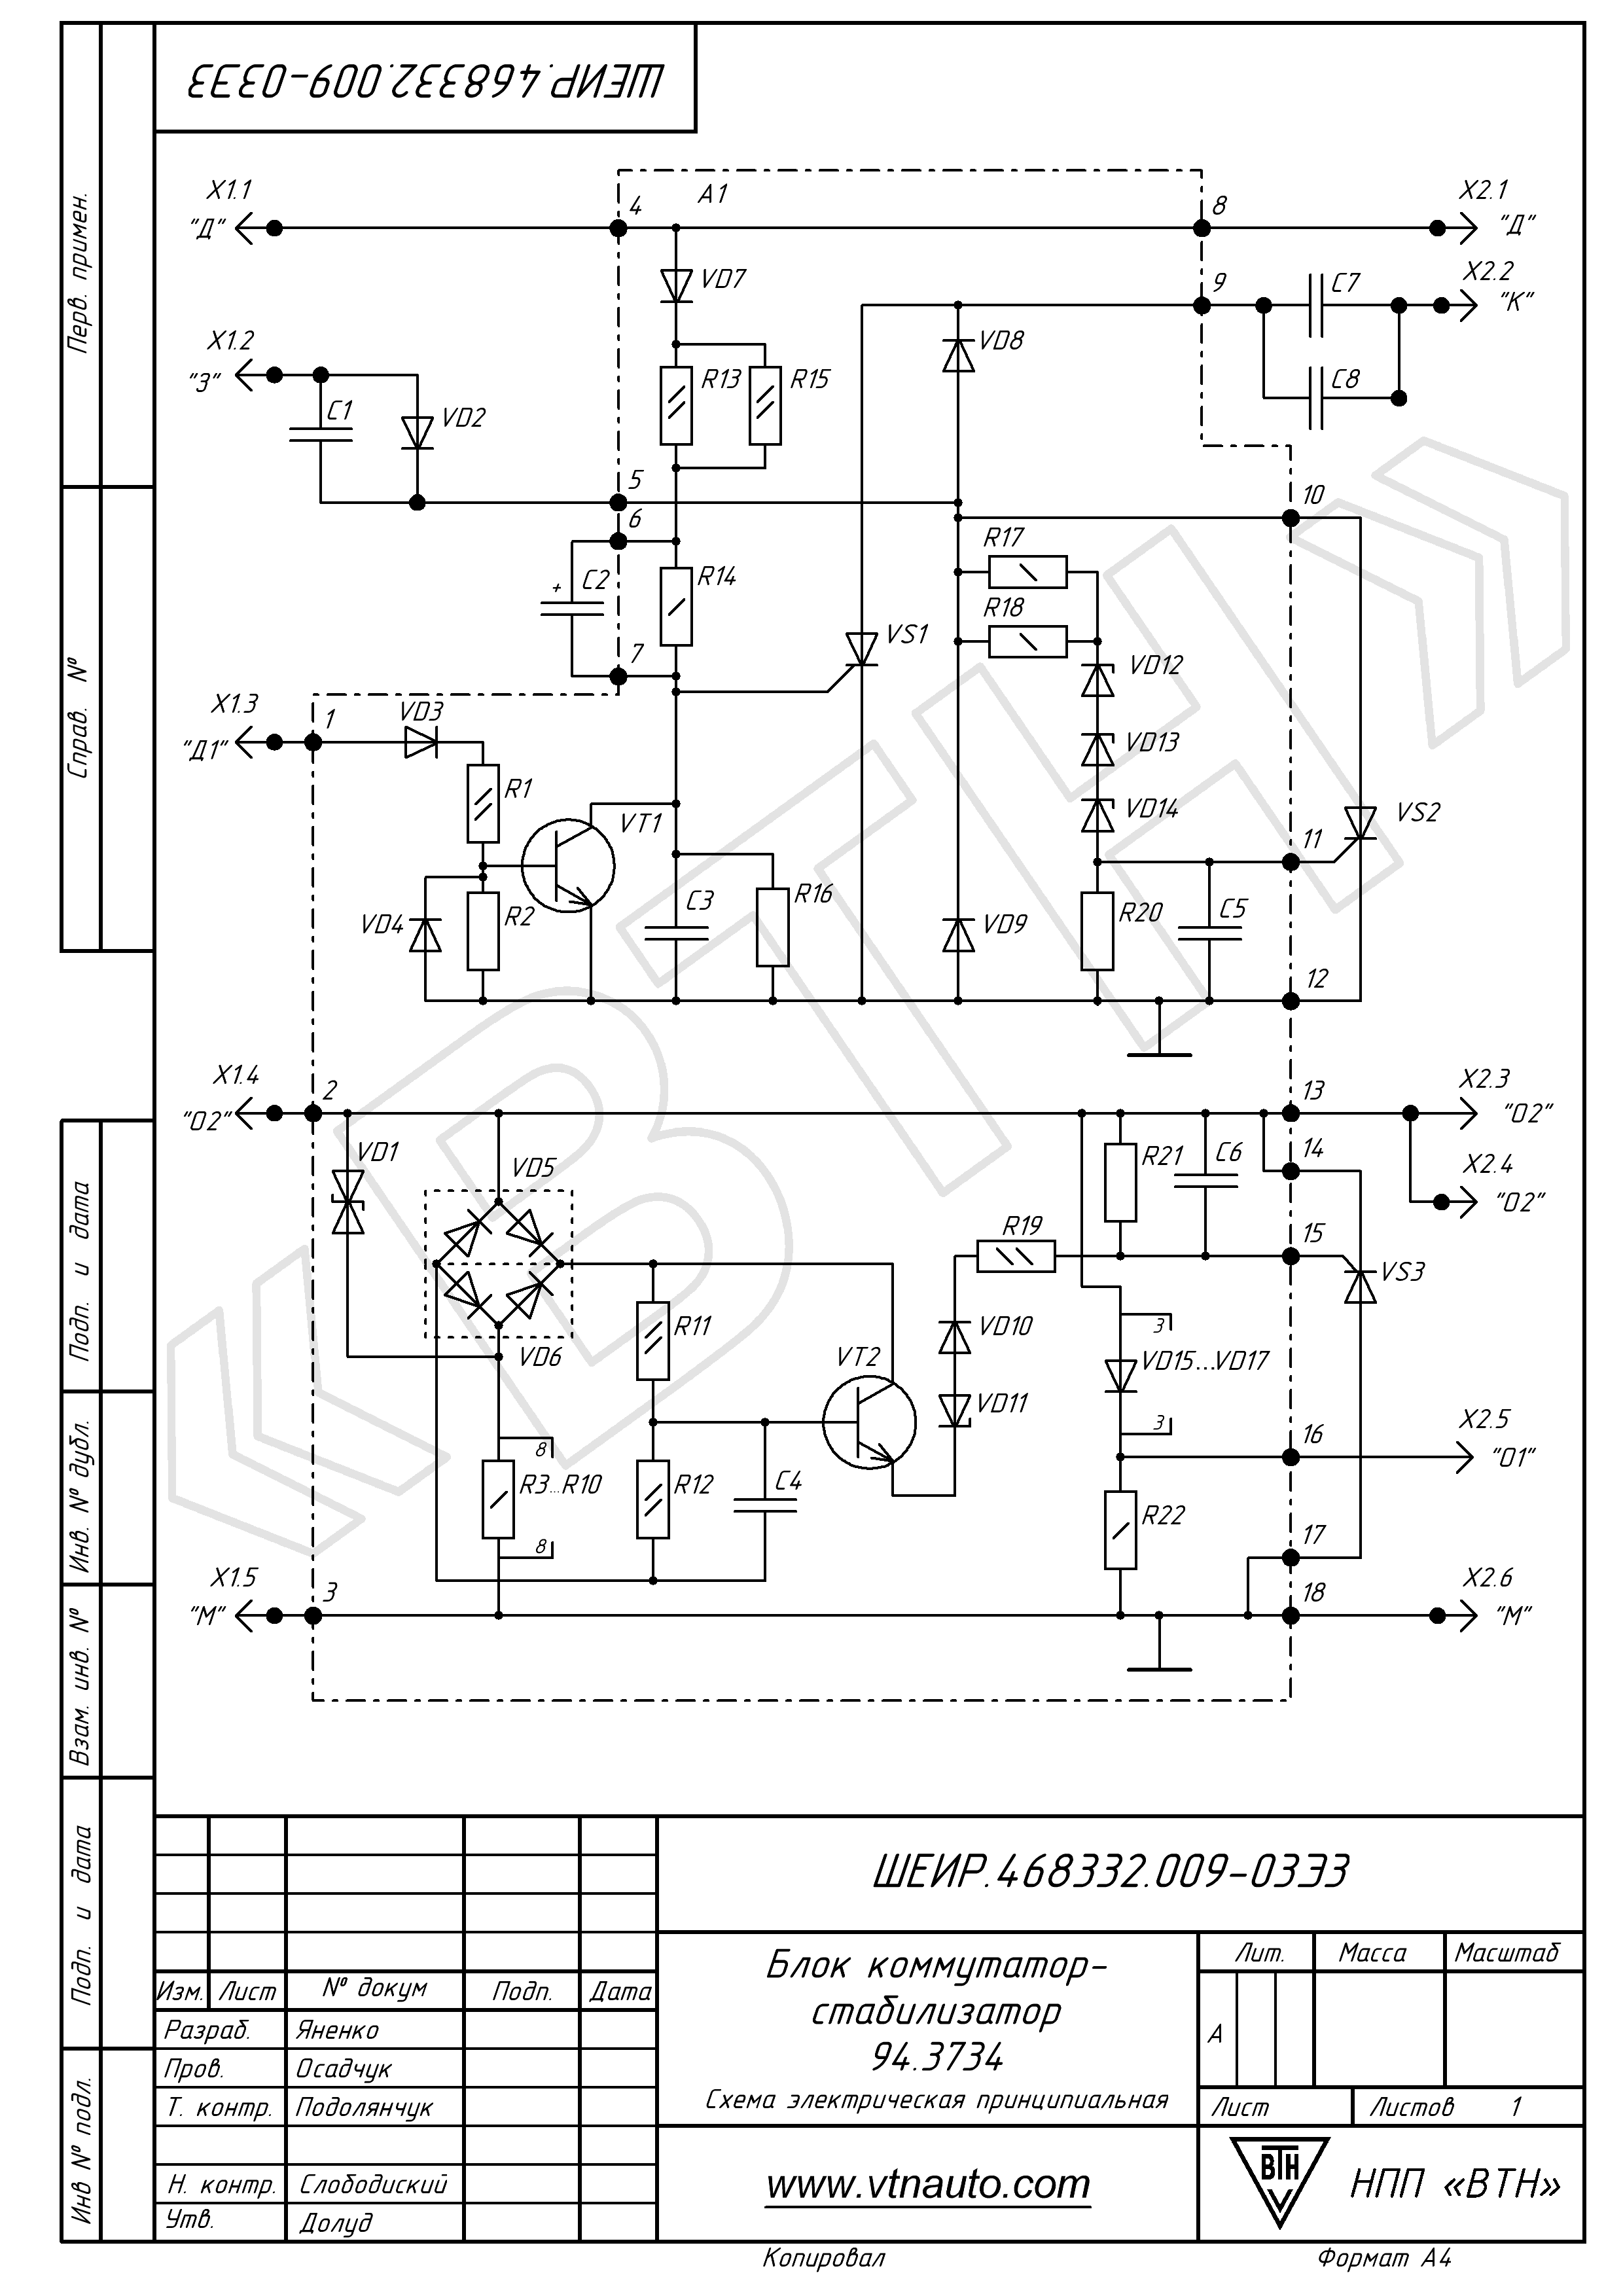 Схема электрическая принципиальная блока коммутатор-стабилизатора 94.3734